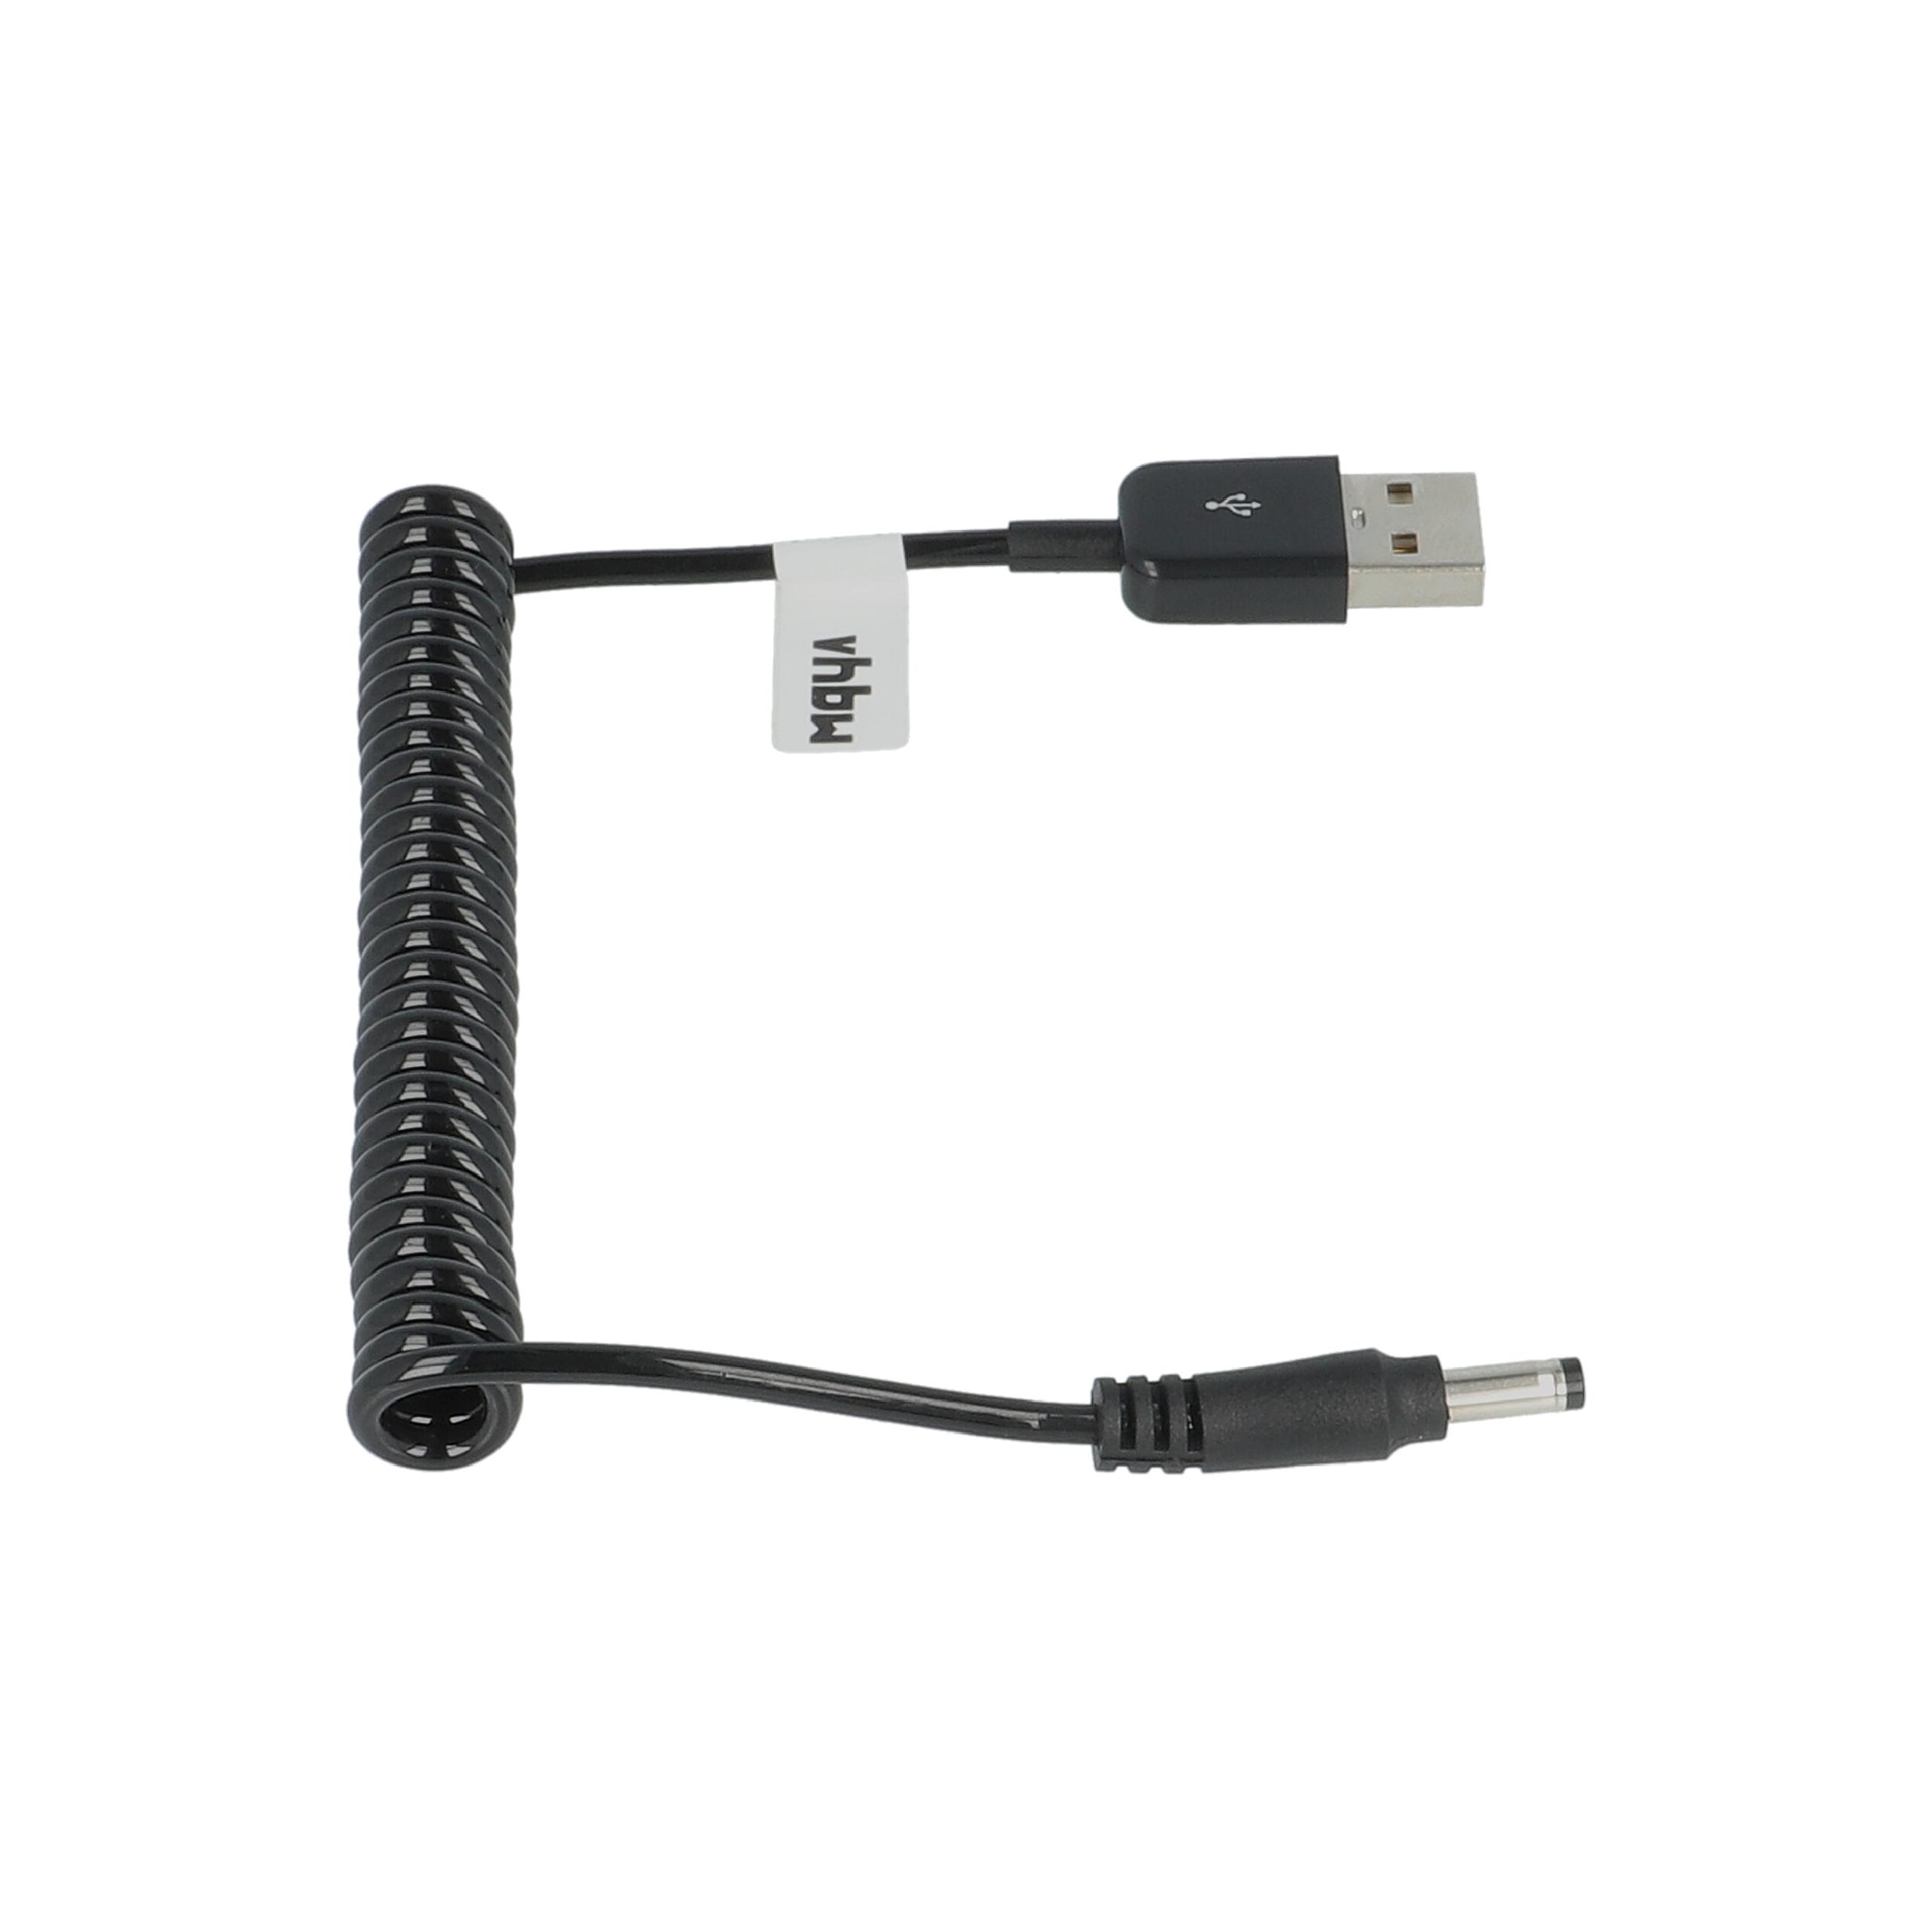 Cable de carga USB reemplaza Panasonic K2GHYYS00002 para cámaras, videocámaras Panasonic - 1 m